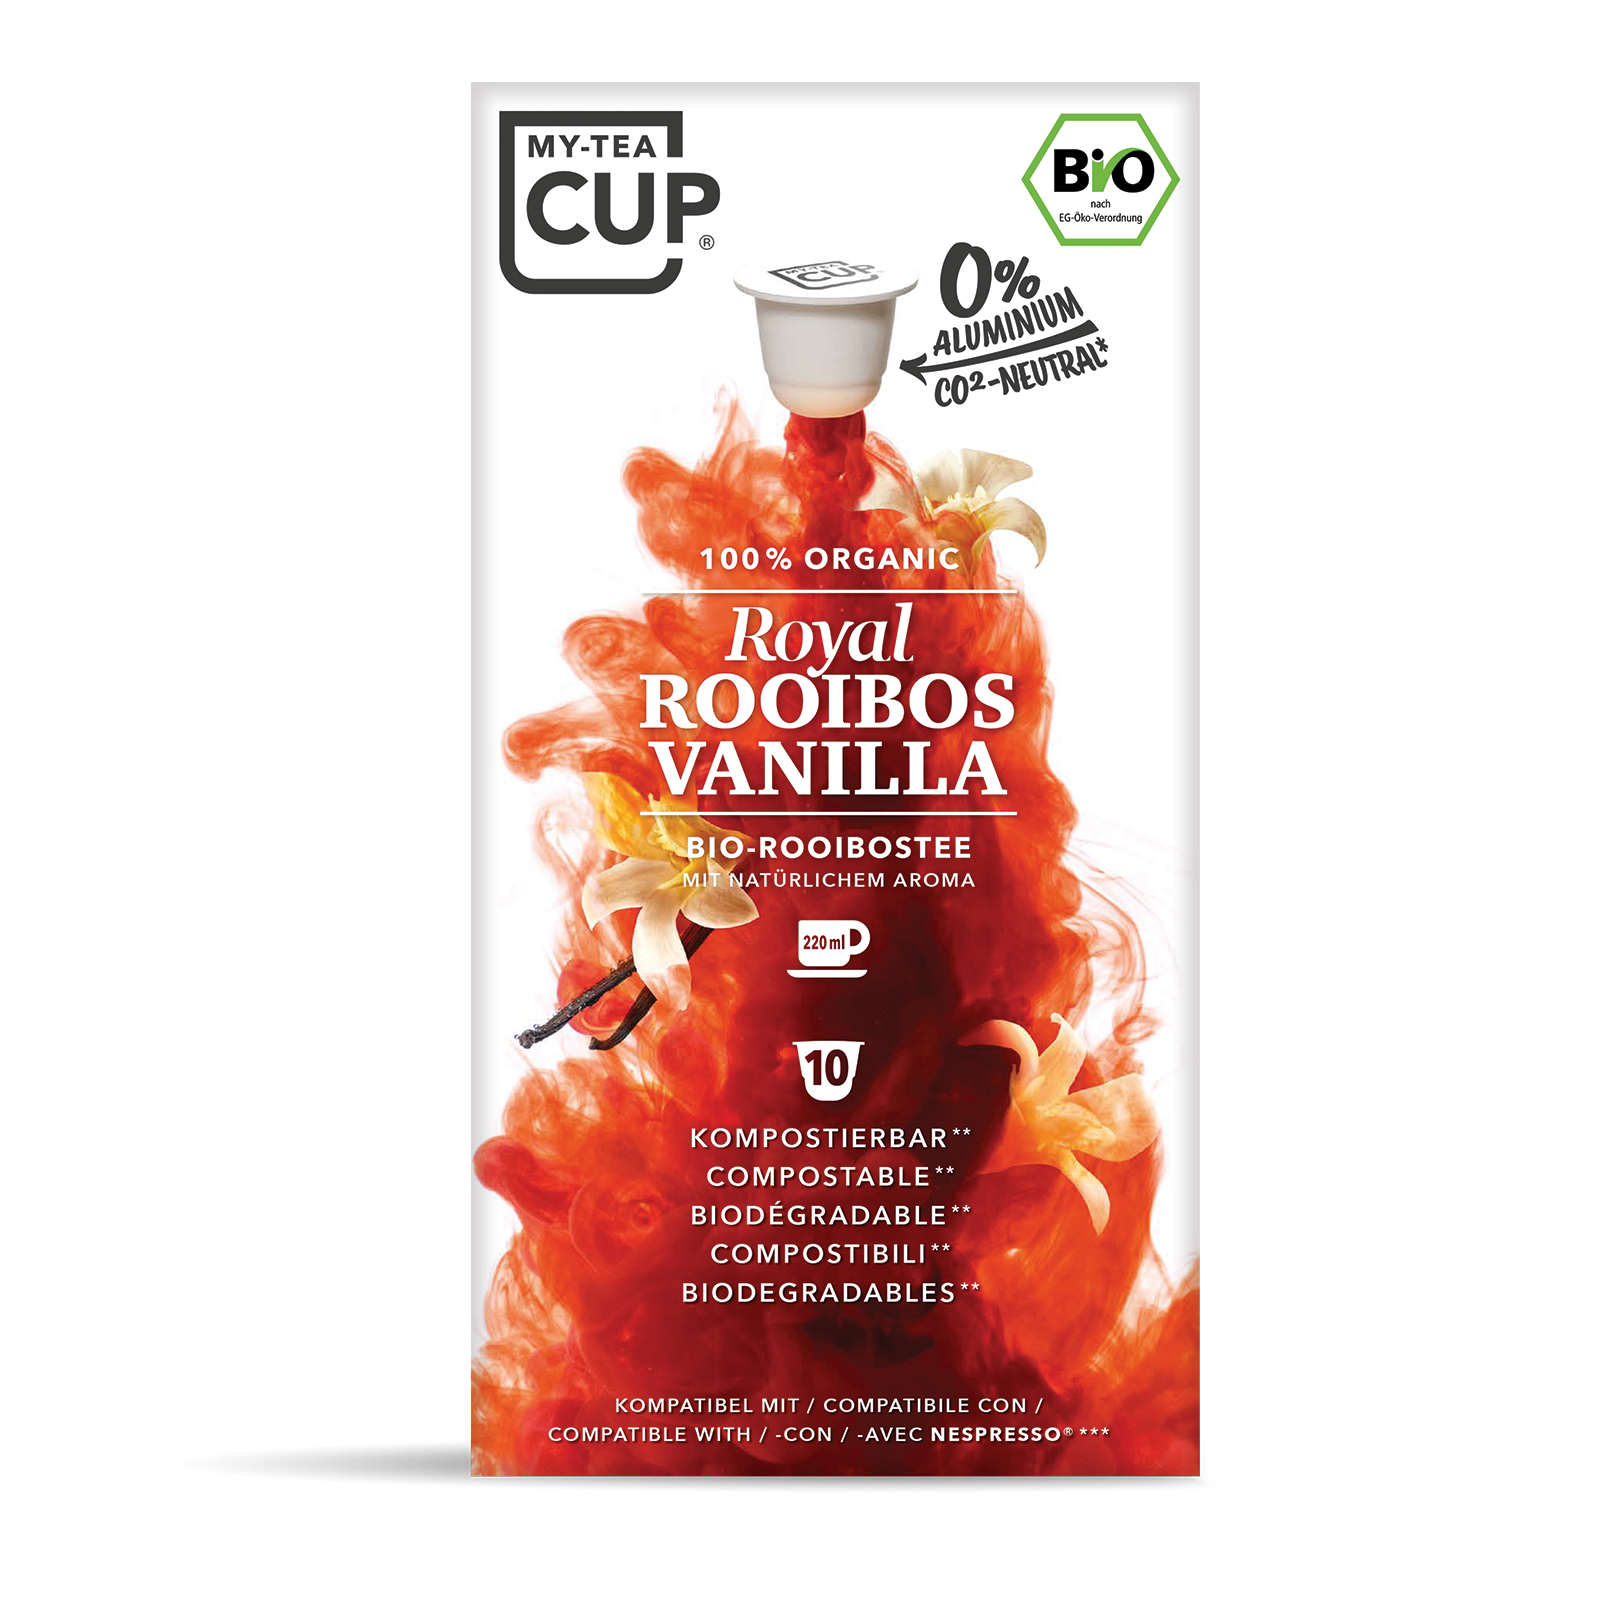 Royal Rooibos Vanilla